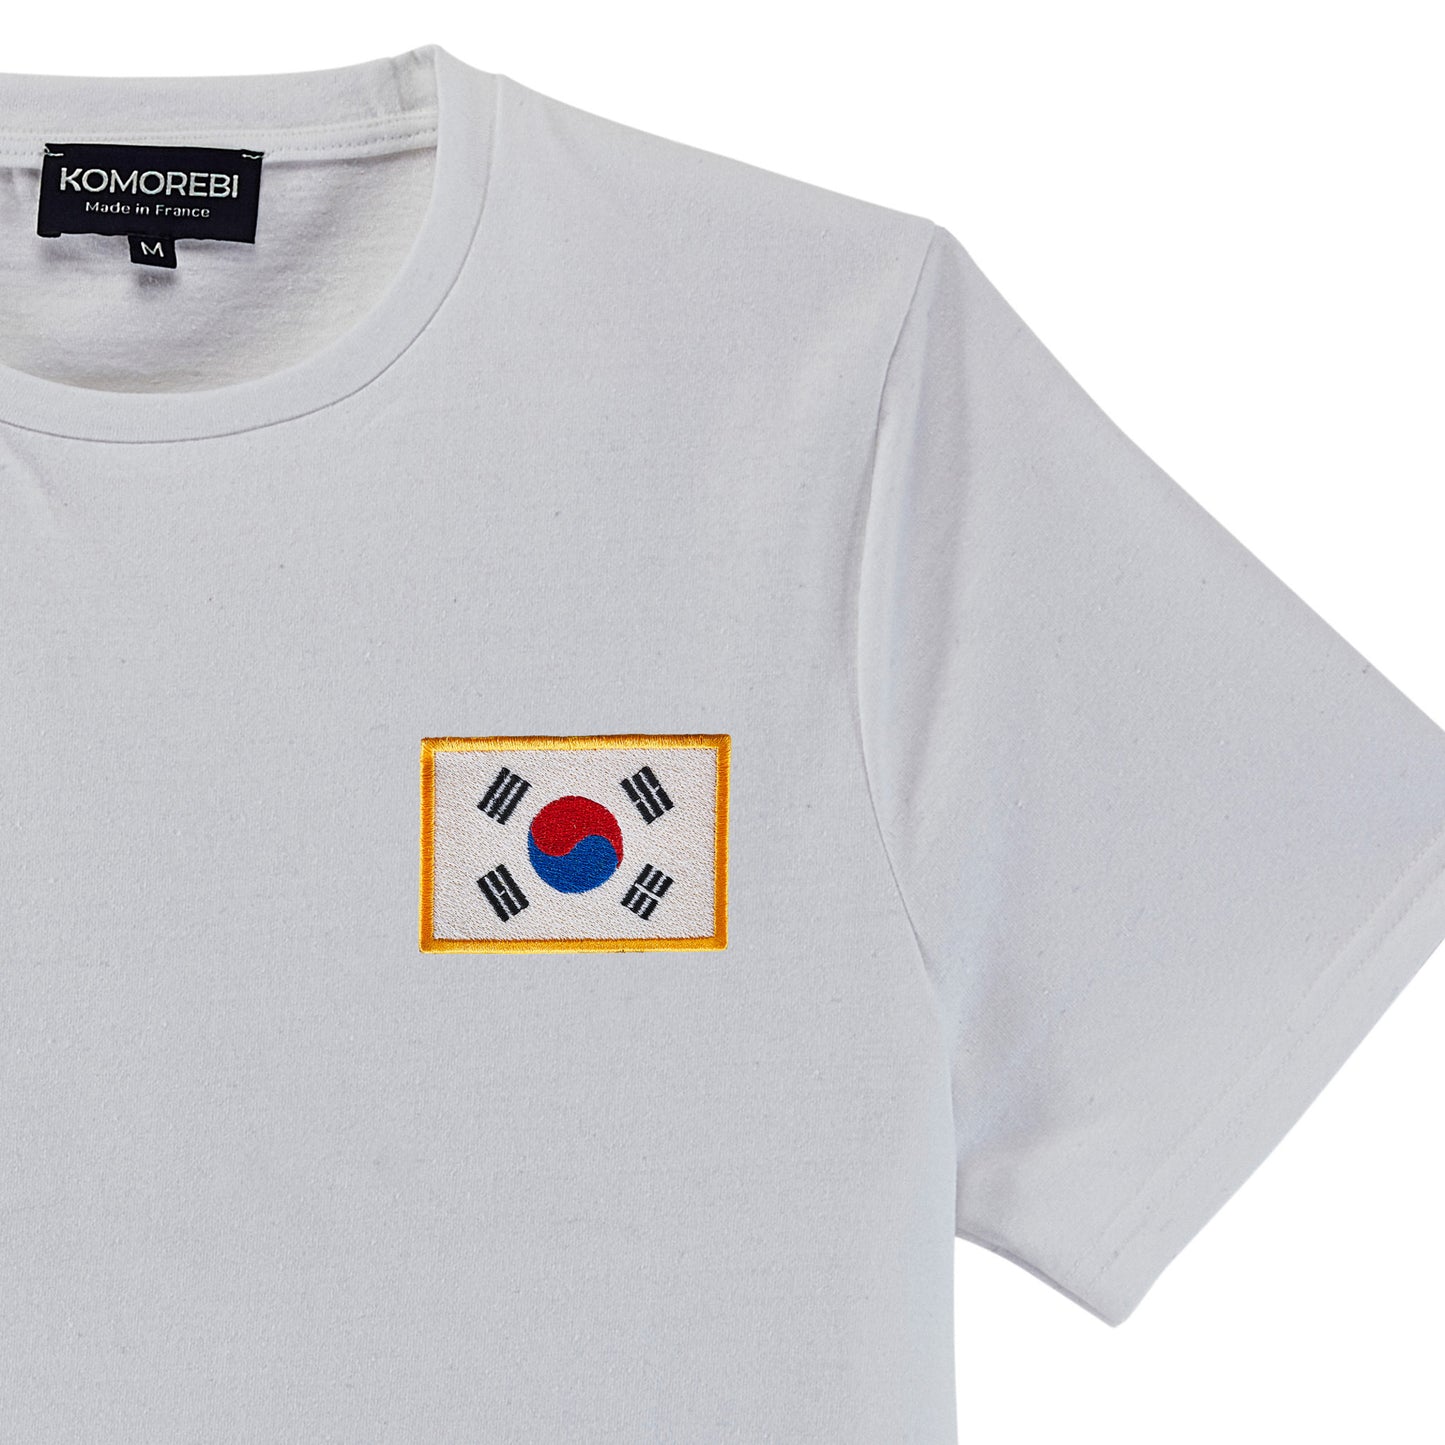 South Korea • T-shirt